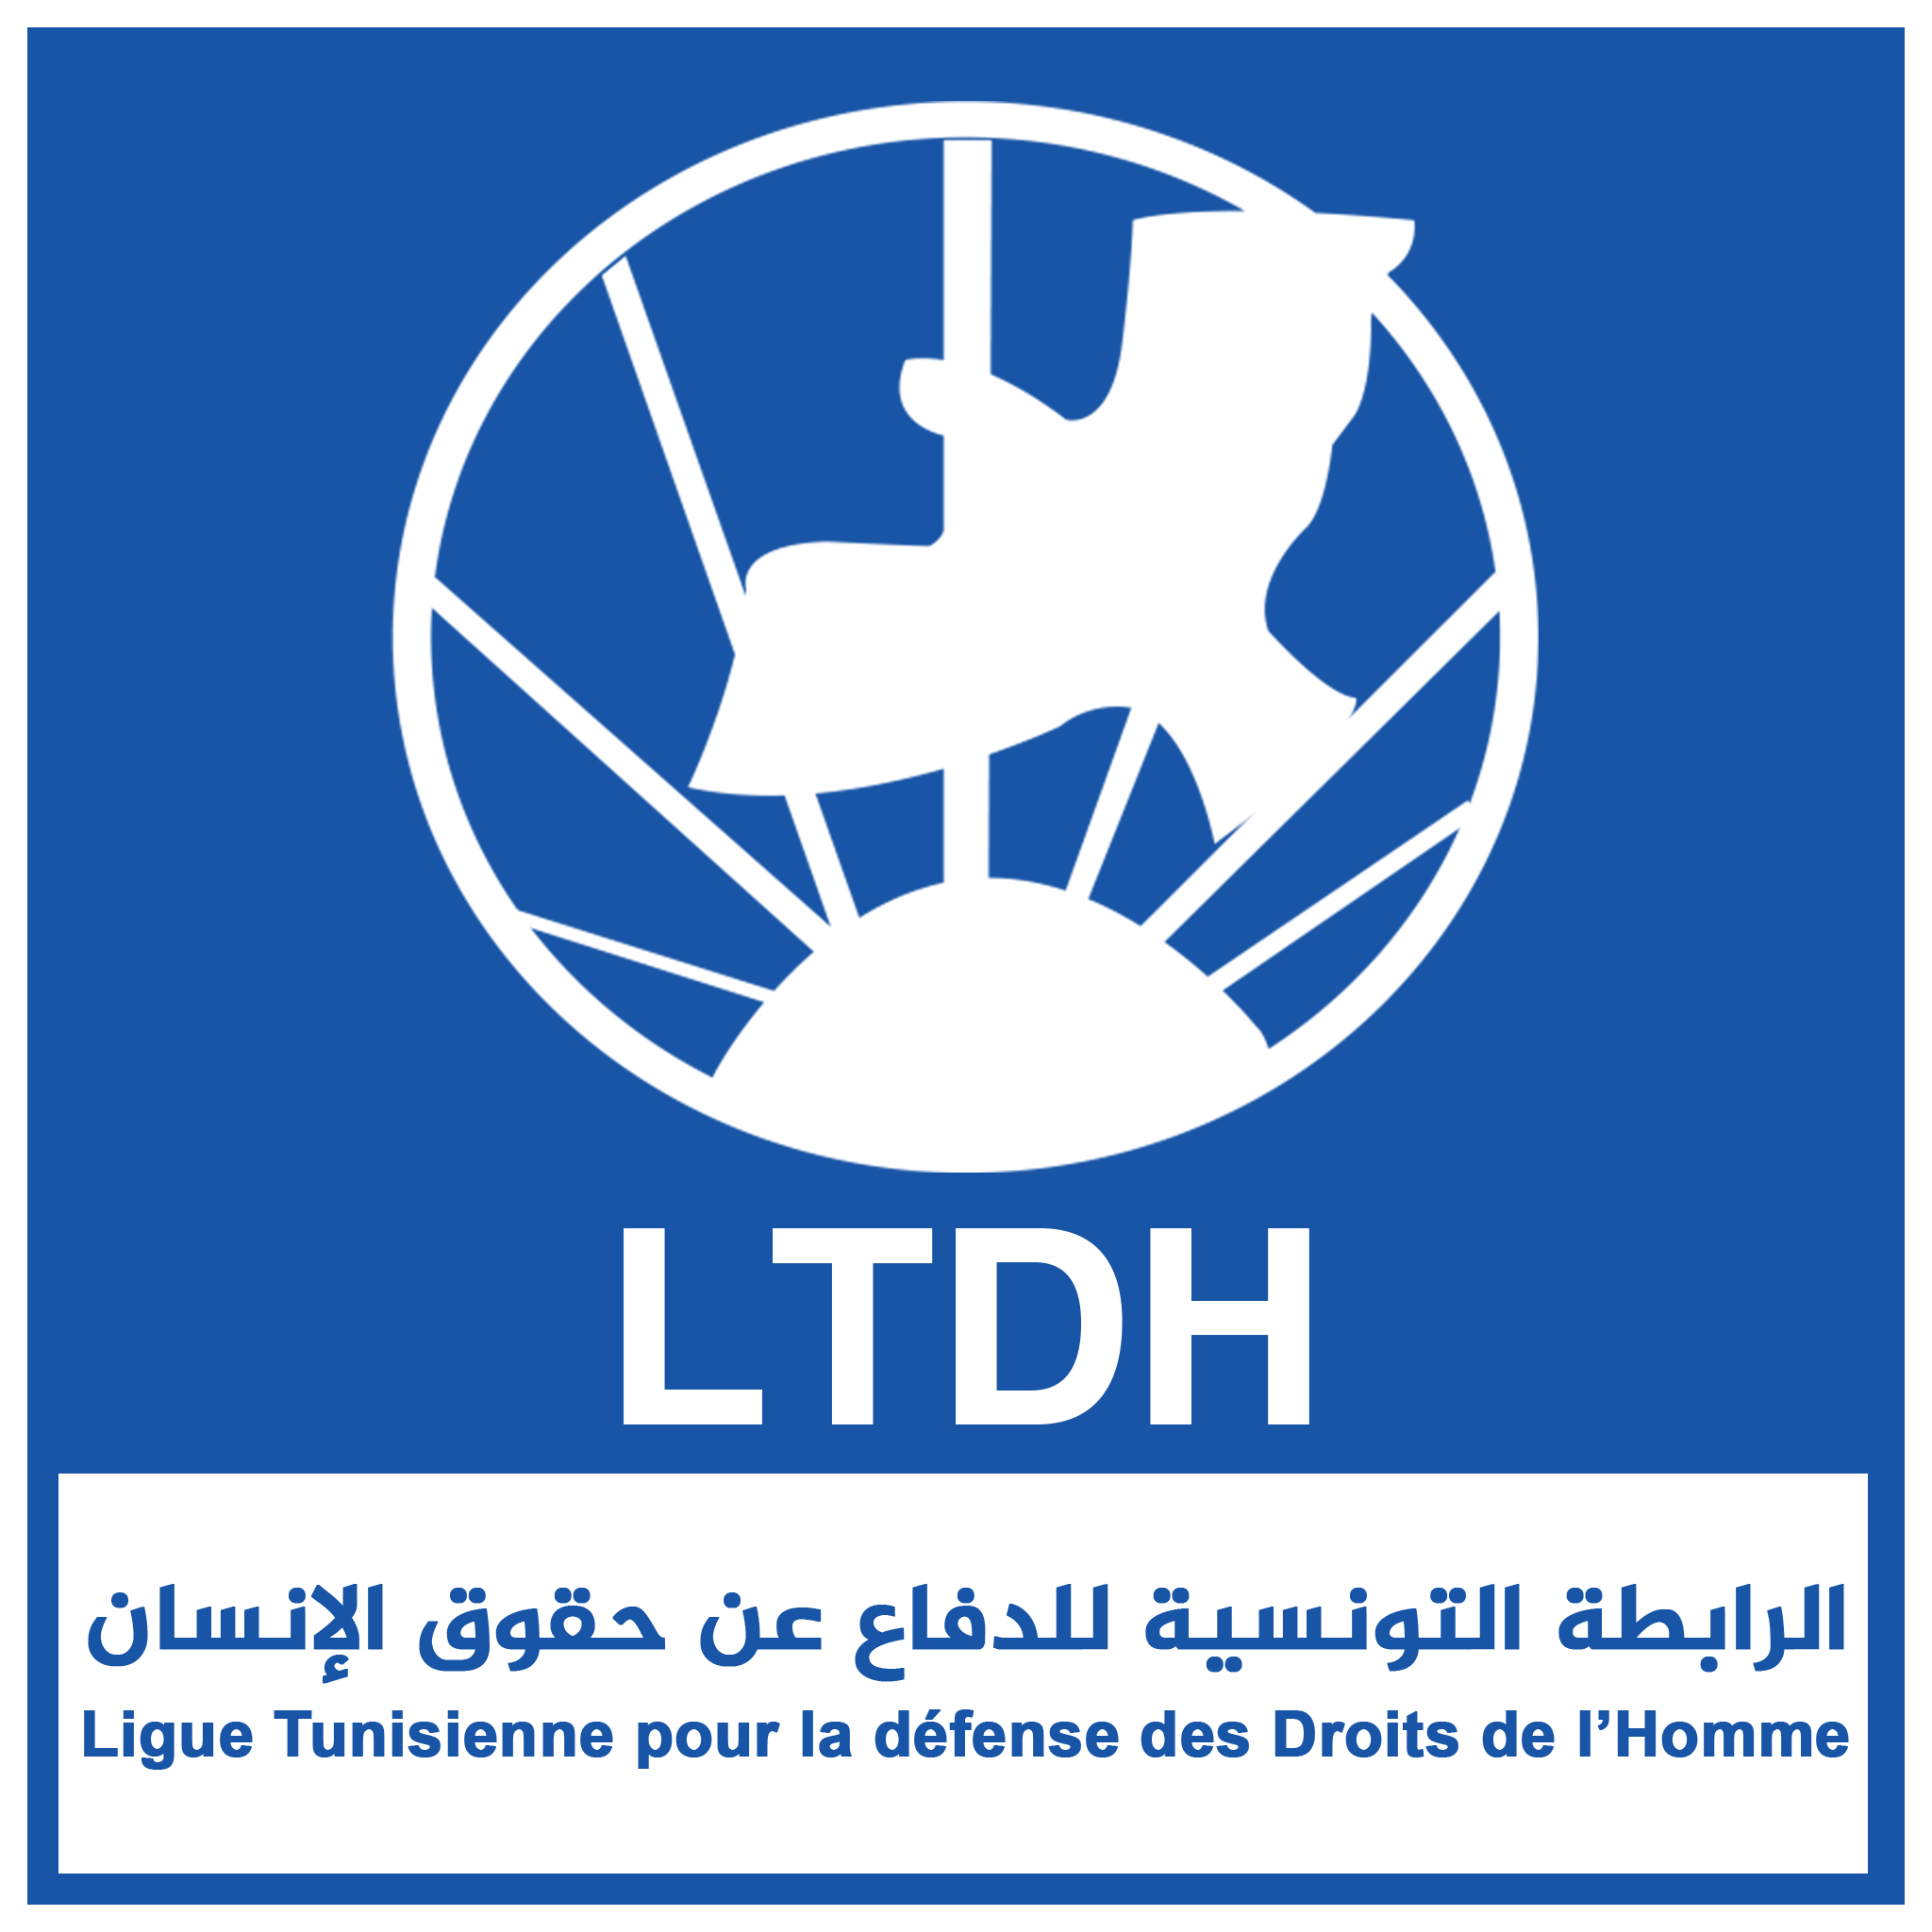 LOGO LTDH-_الرابطة_التونسية_للدفاع_عن_حقوق_الانسان